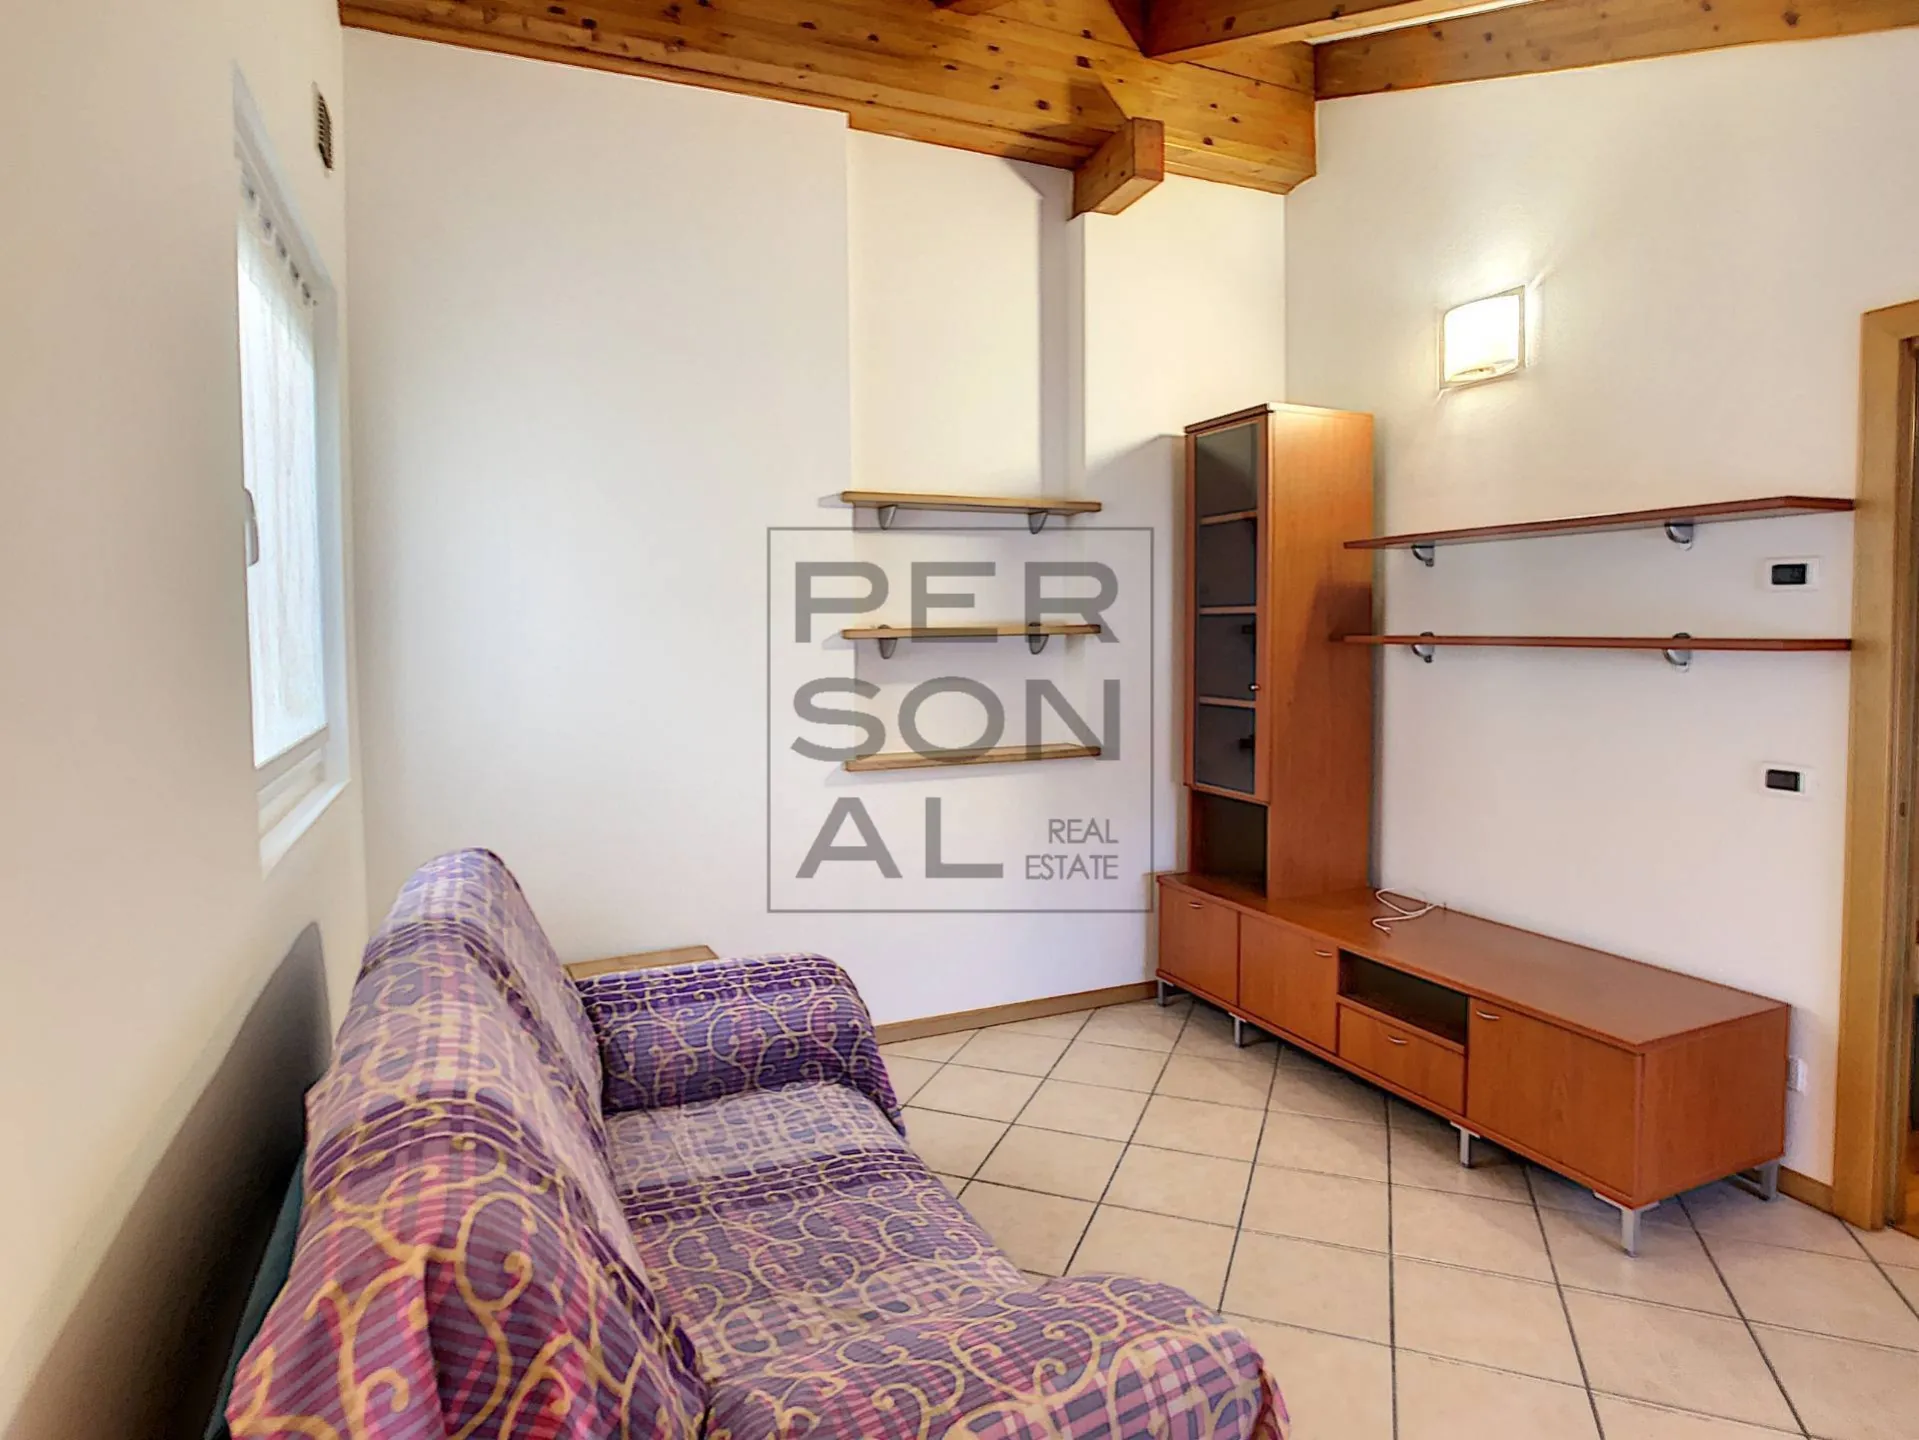 Immagine per Appartamento in affitto a Trento centro